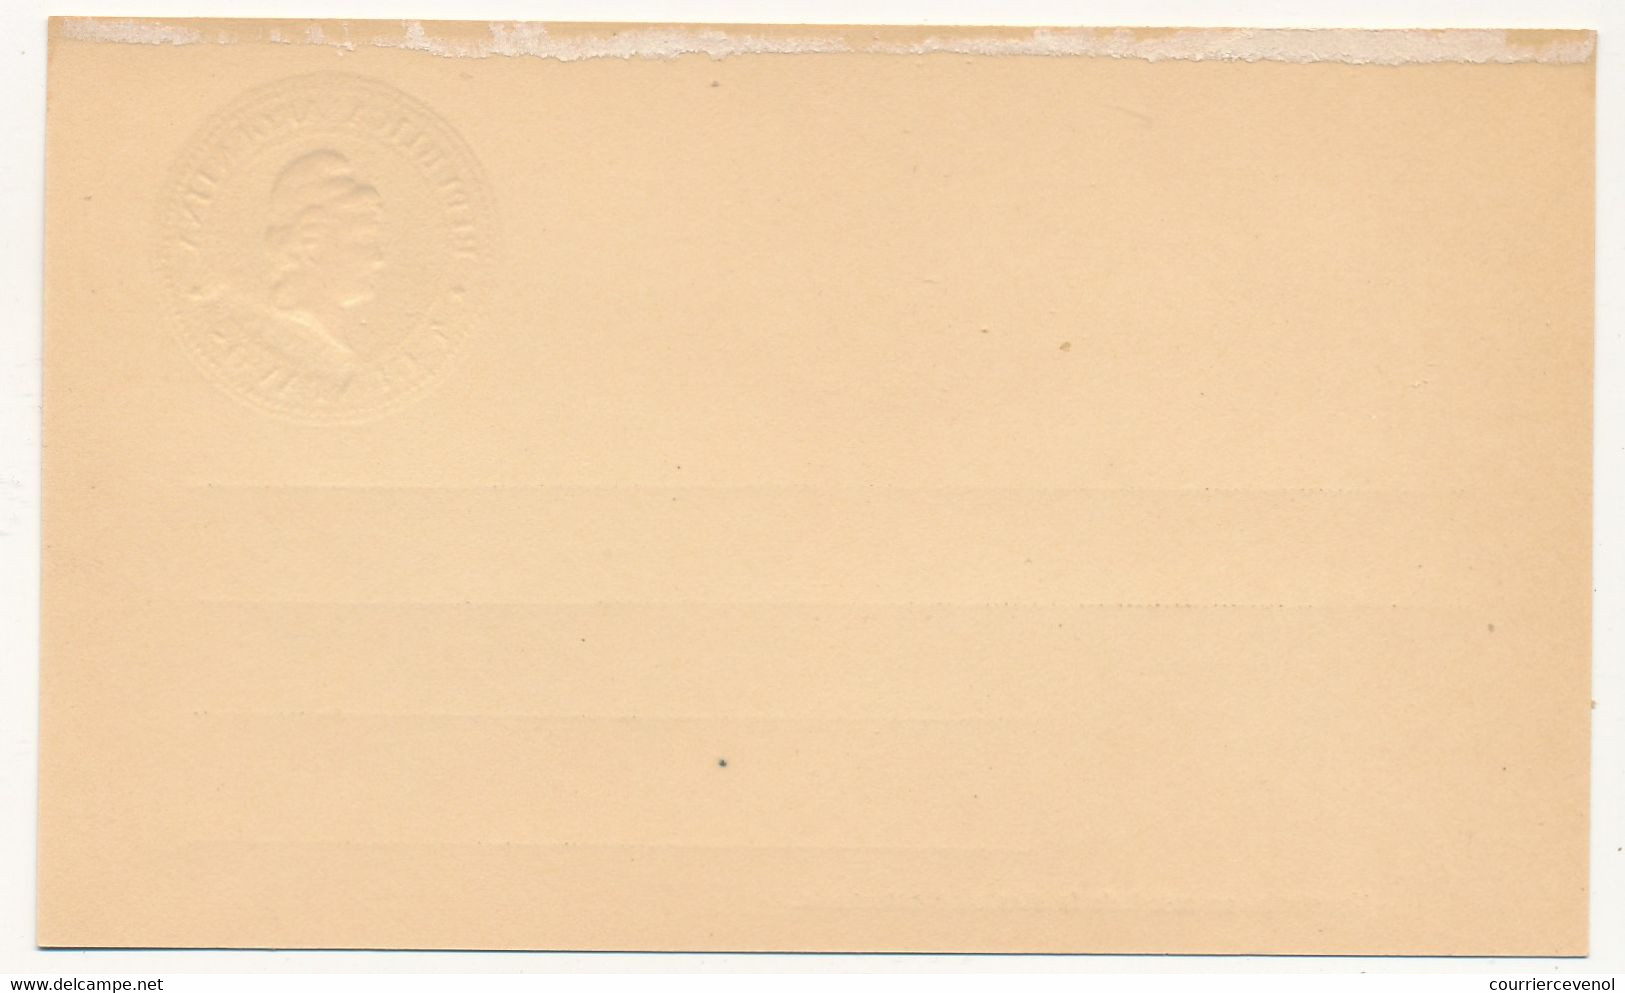 ARGENTINE - Entier Postal - Carte Postale - 4 Centavos (MUESTRA) - Non Illustrée - Postal Stationery